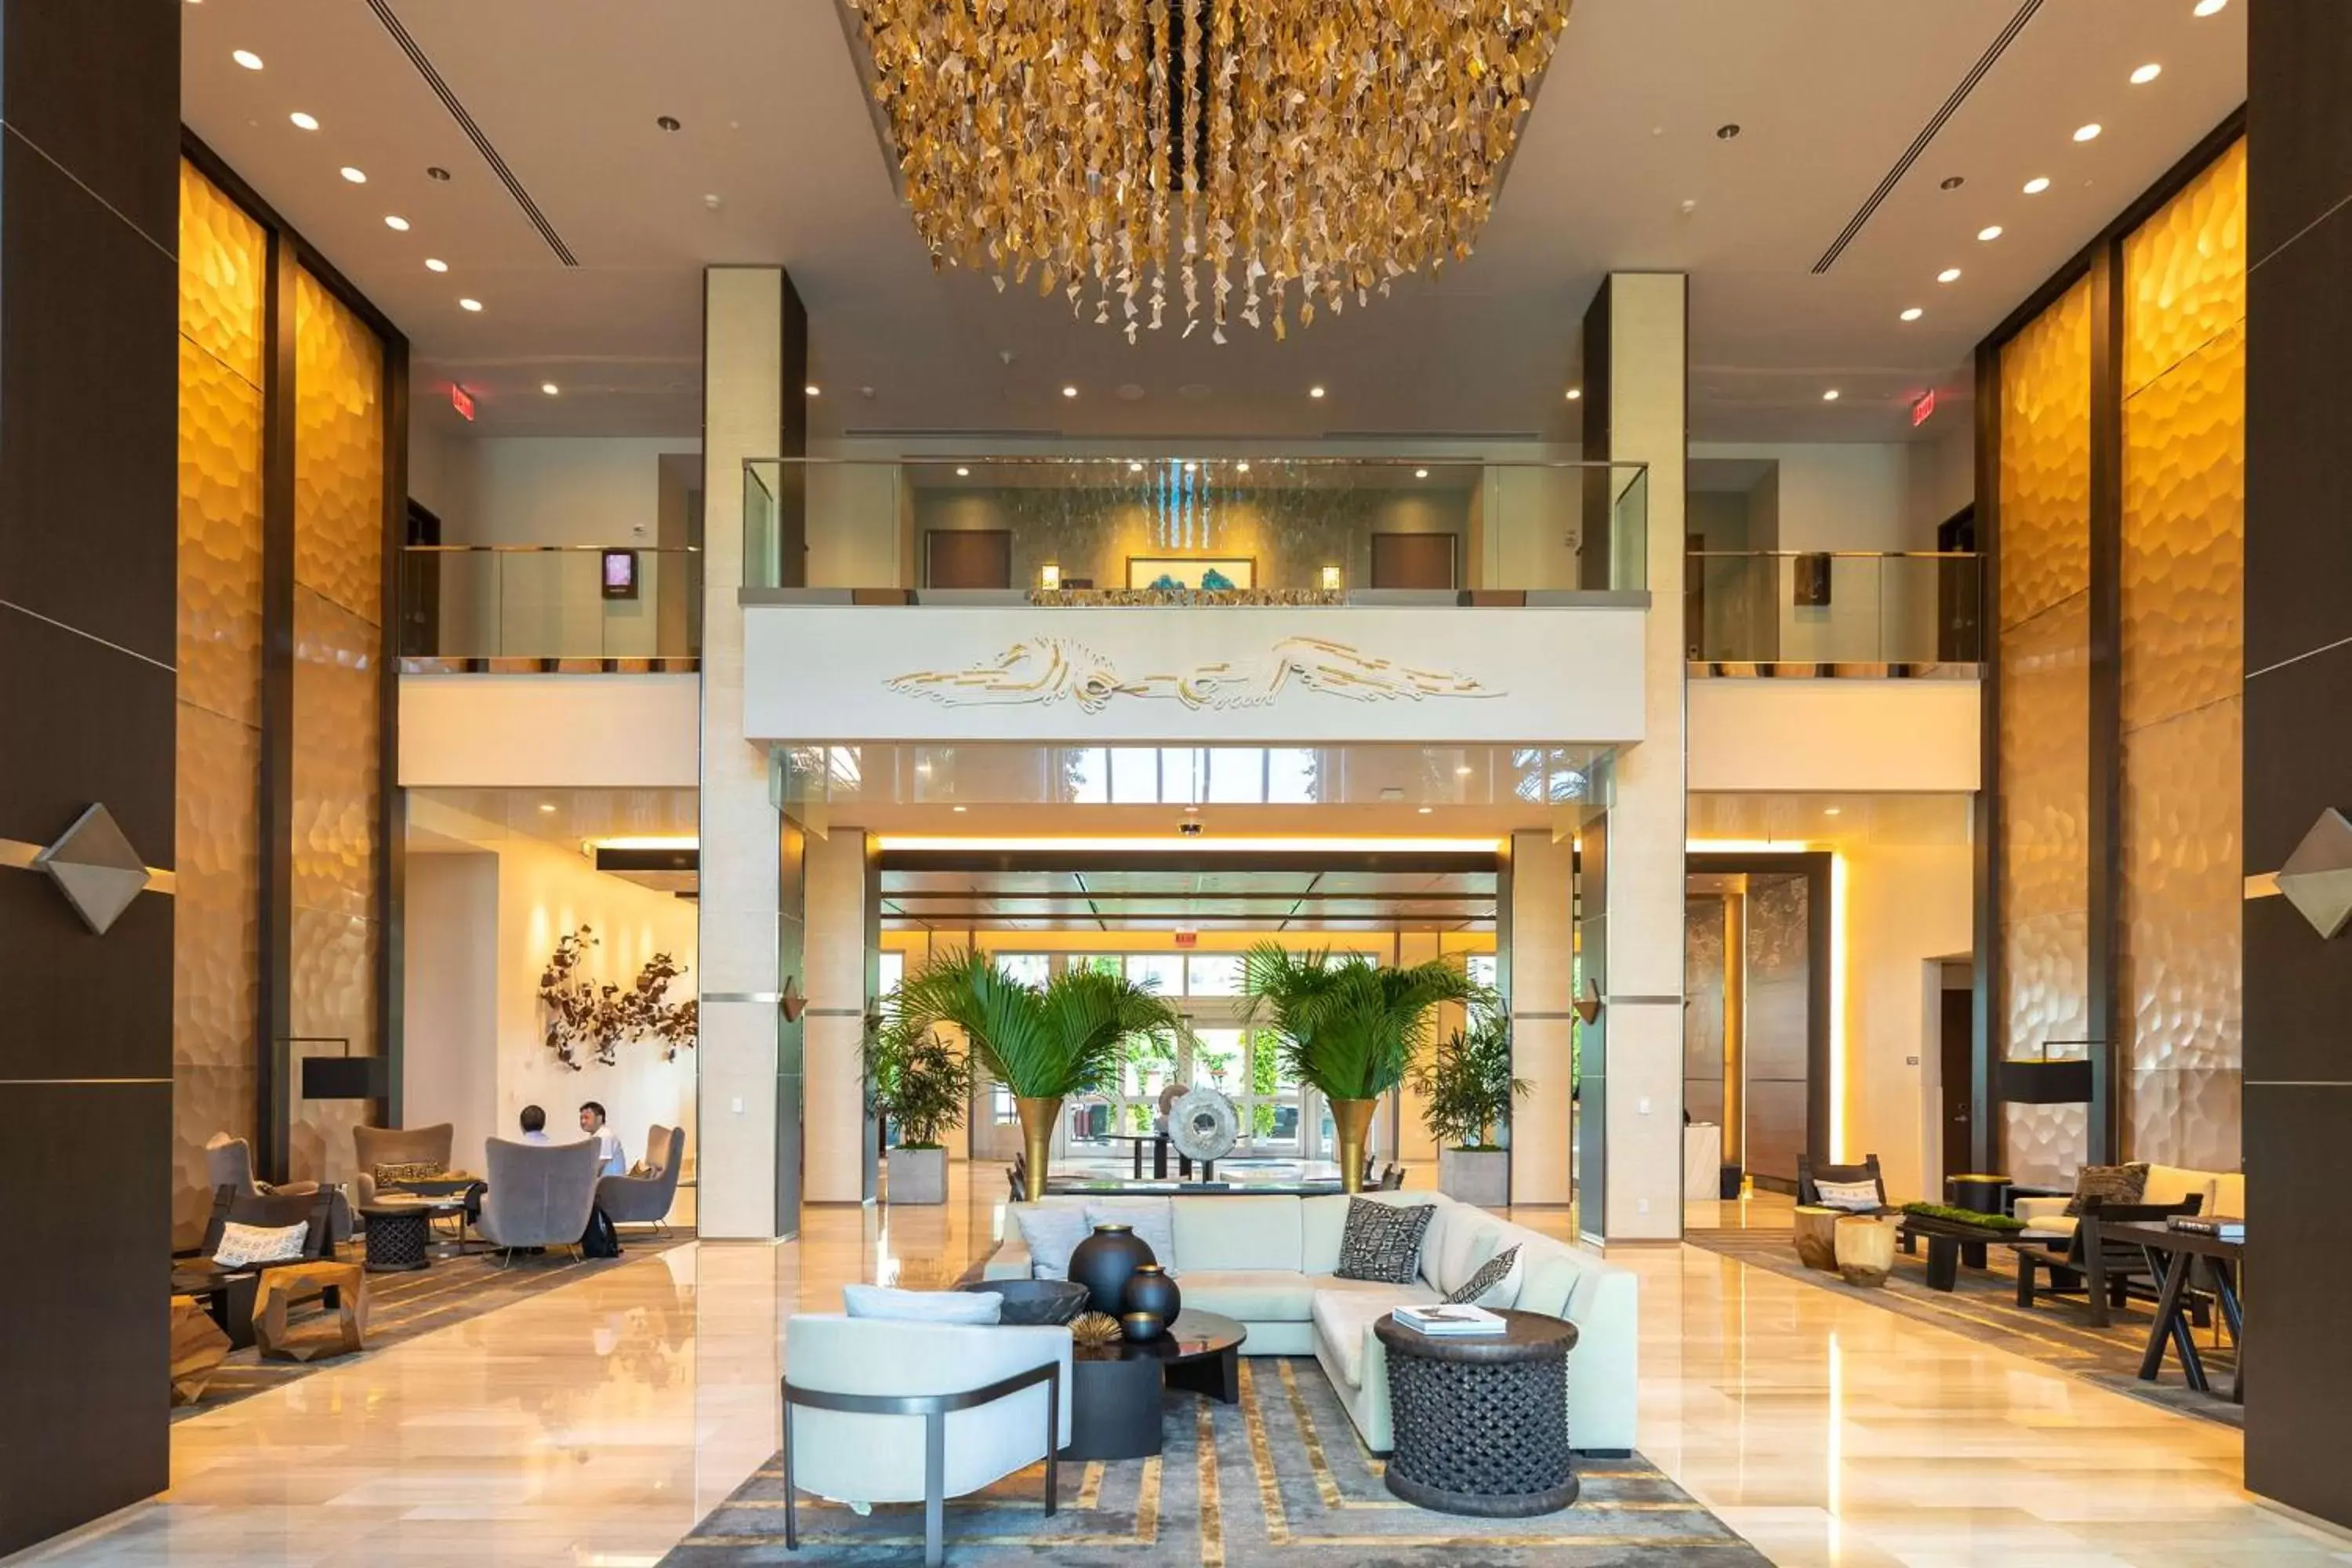 Lobby or reception in Hilton West Palm Beach